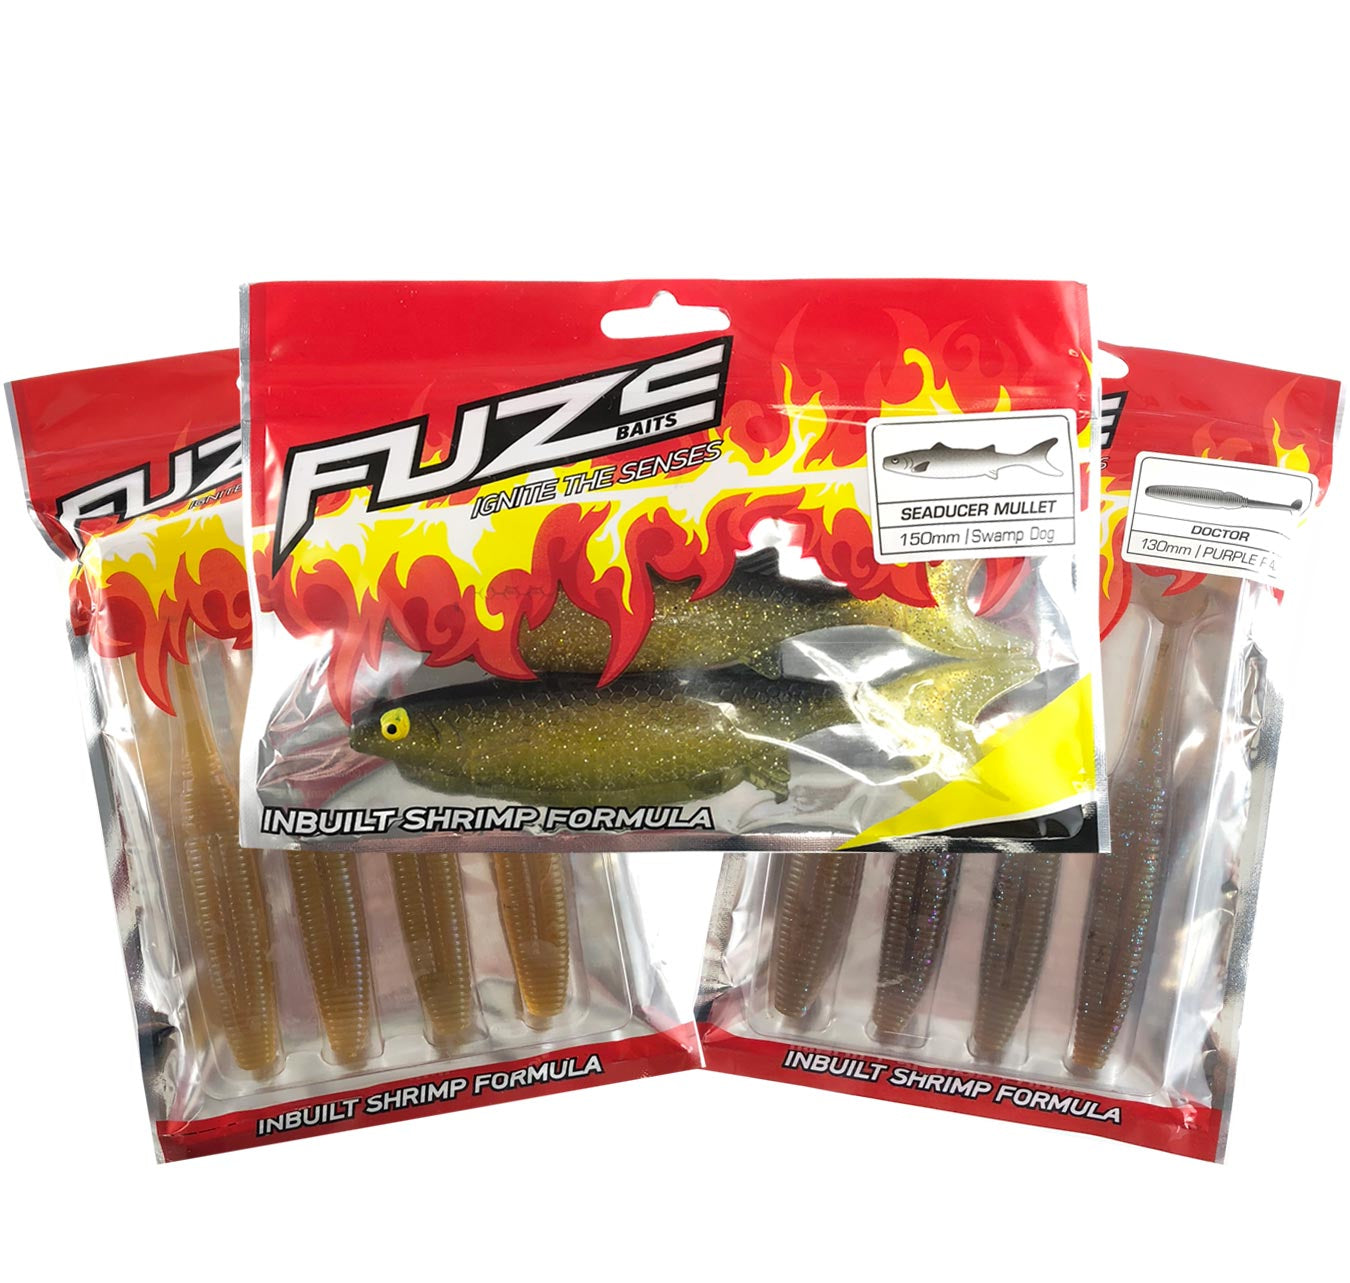 Fuze Cod Soft Plastics Pack